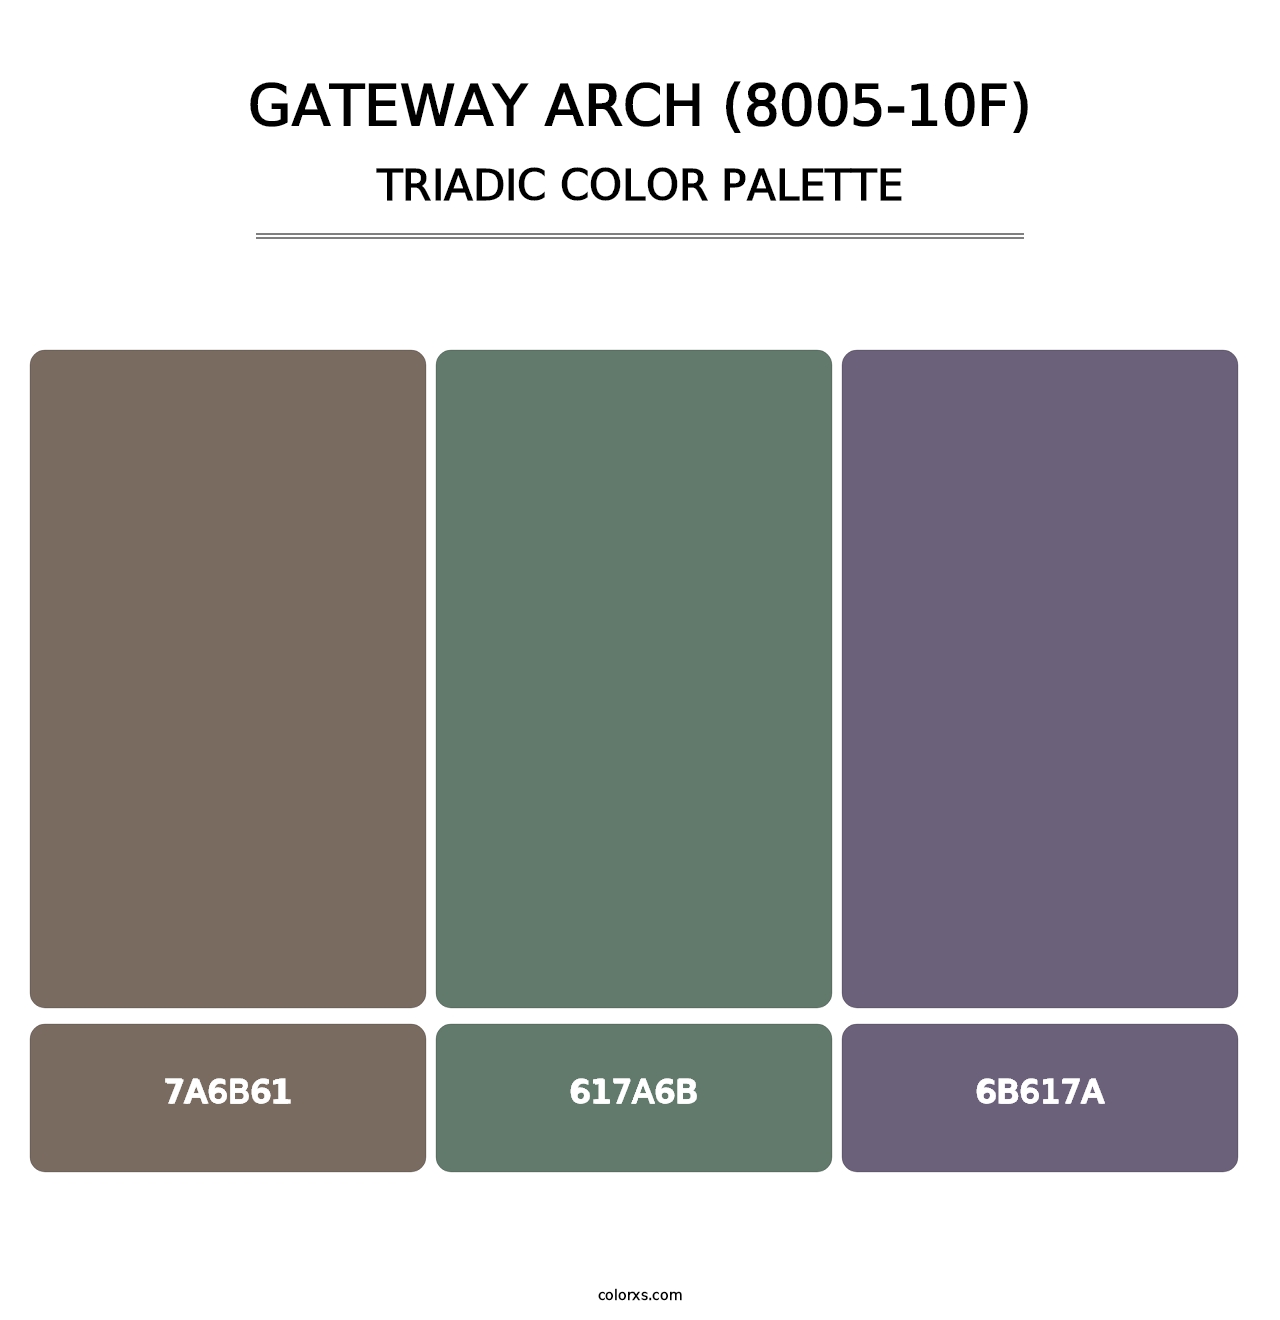 Gateway Arch (8005-10F) - Triadic Color Palette